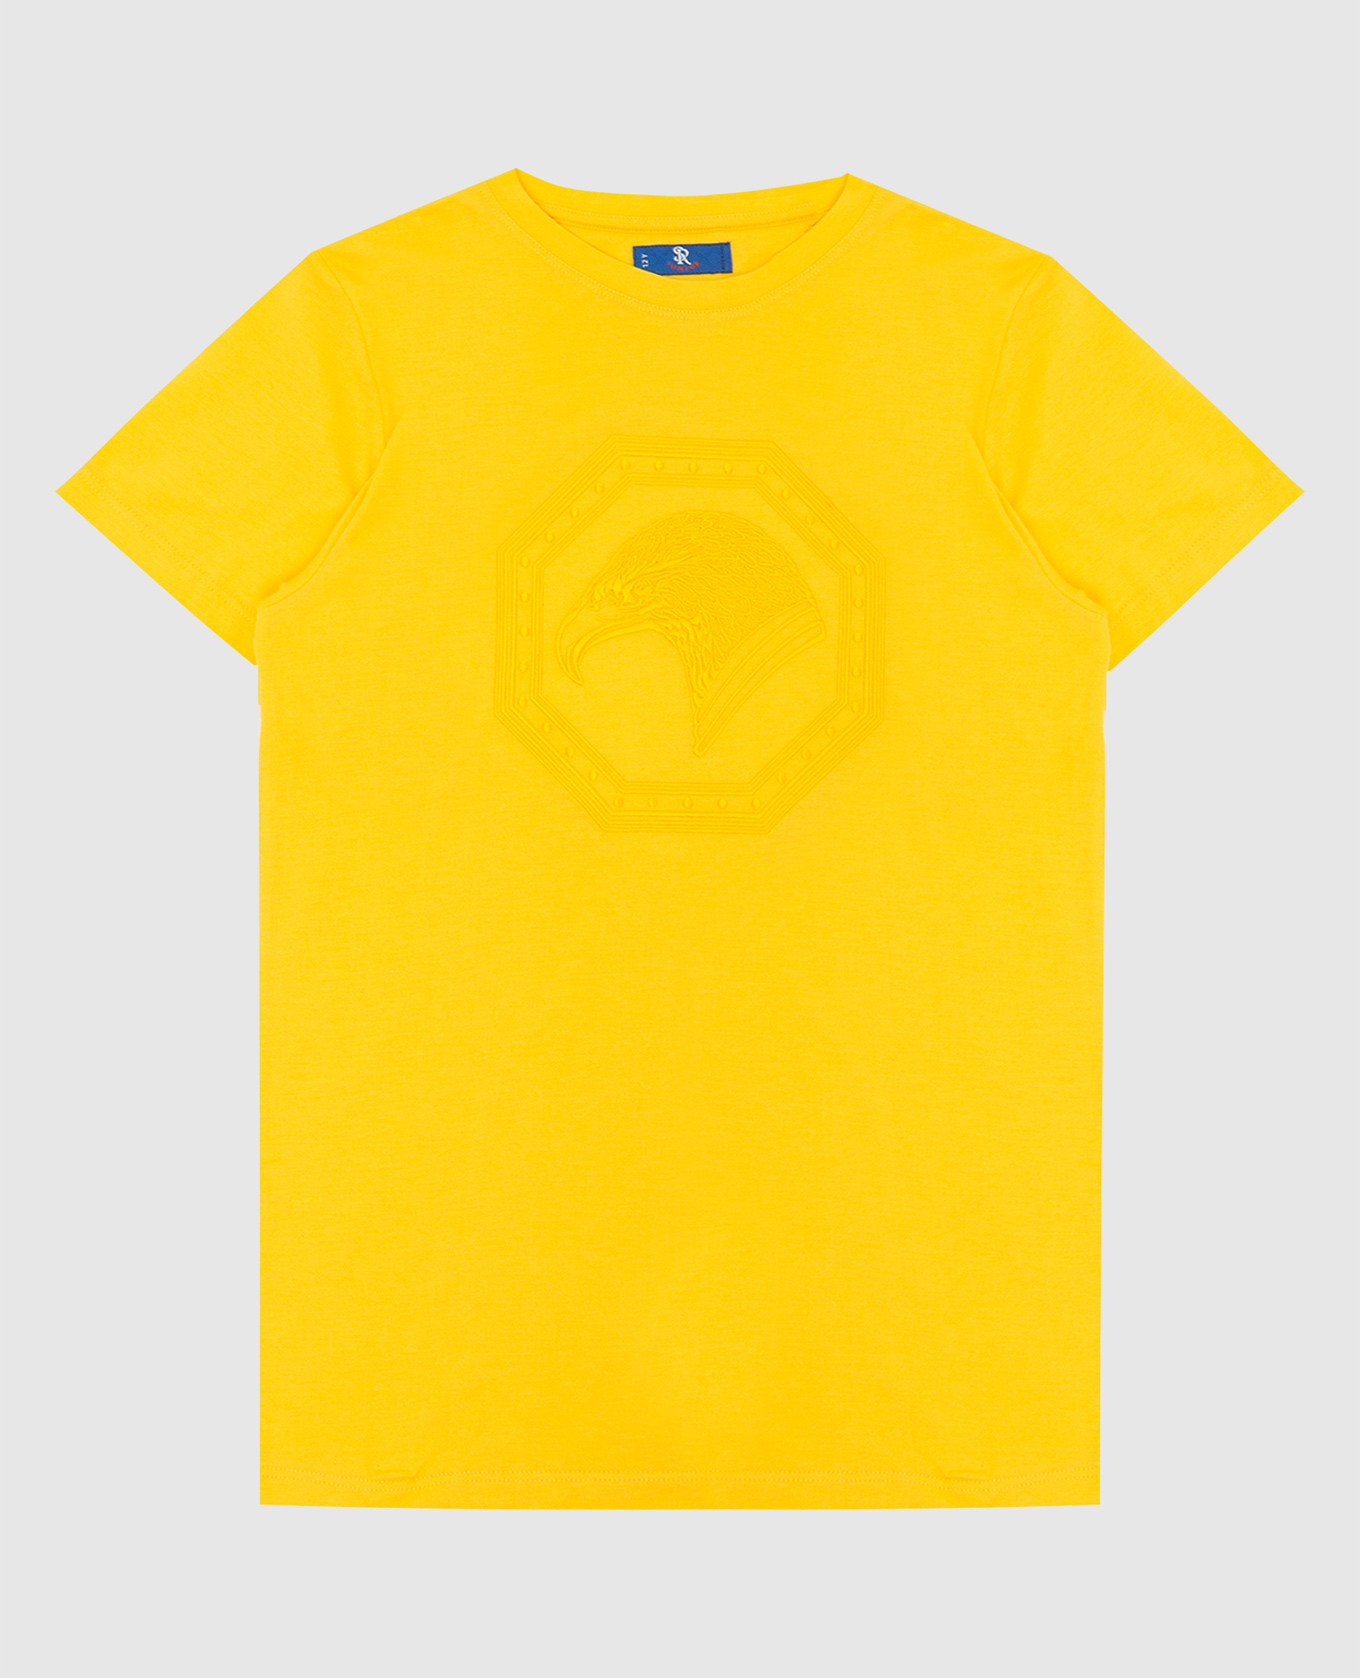 Детская желтая футболка с вышивкой эмблемы